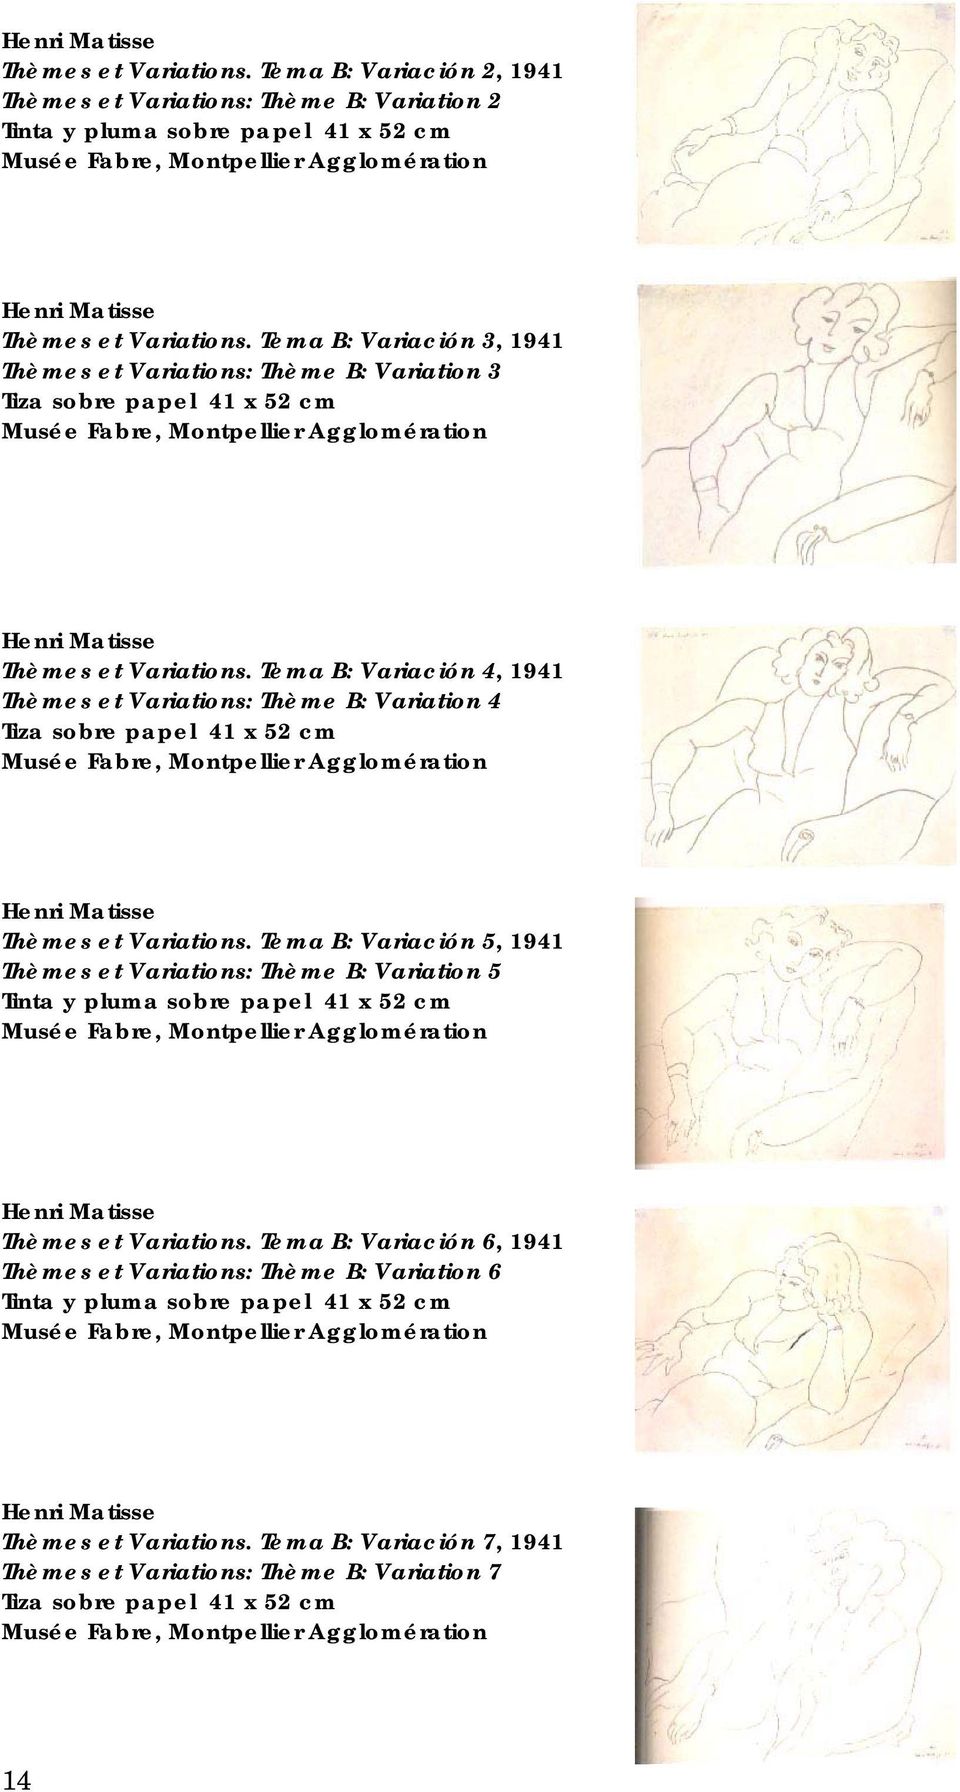 Tema B: Variación 4, 1941 Thèmes et Variations: Thème B: Variation 4 Tiza sobre papel 41 x 52 cm Musée Fabre, Montpellier Agglomération Thèmes et Variations.